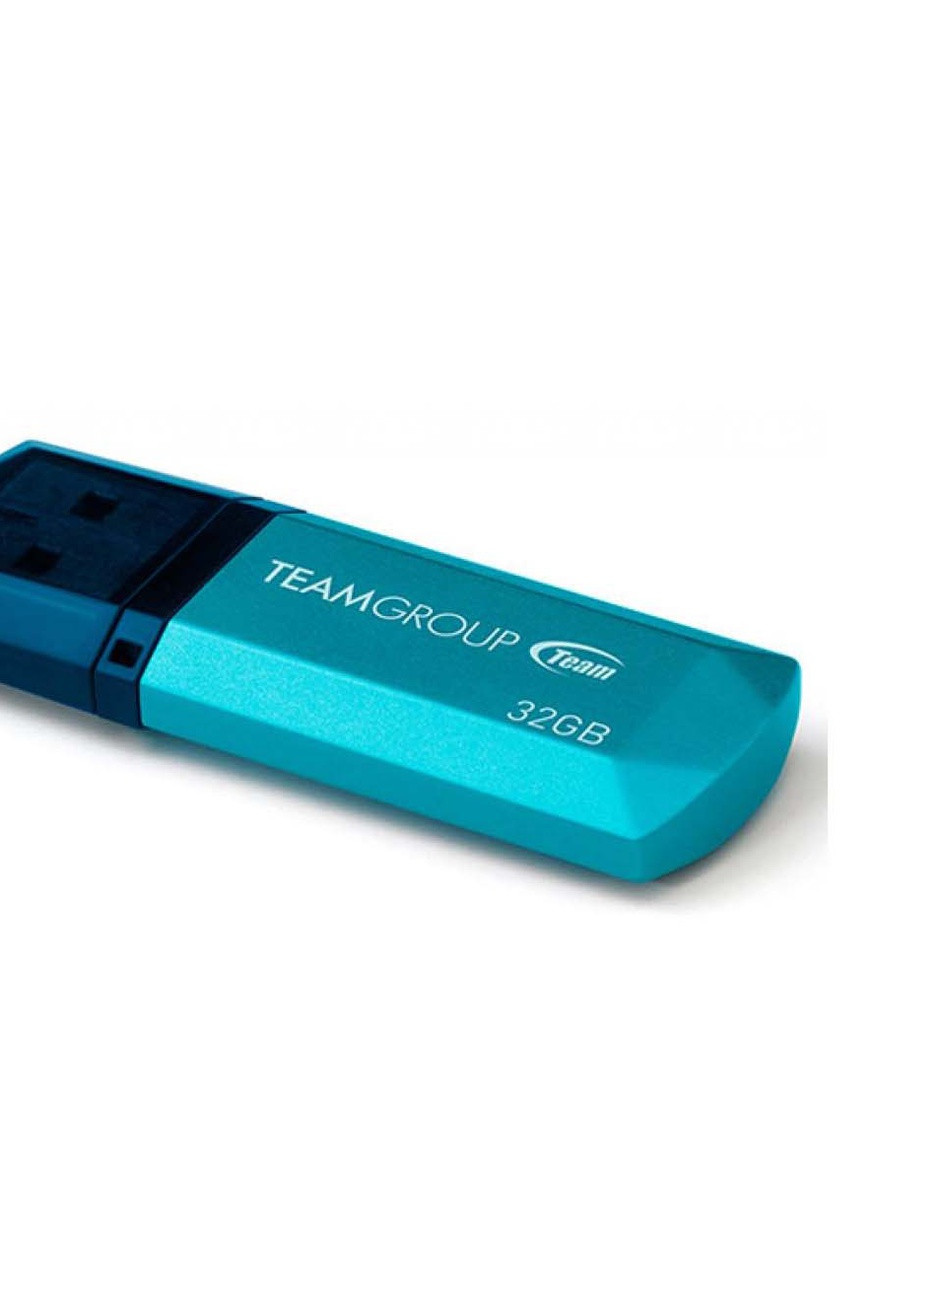 USB флеш накопитель (TC15332GL01) Team 32gb c153 blue usb 2.0 (232750116)